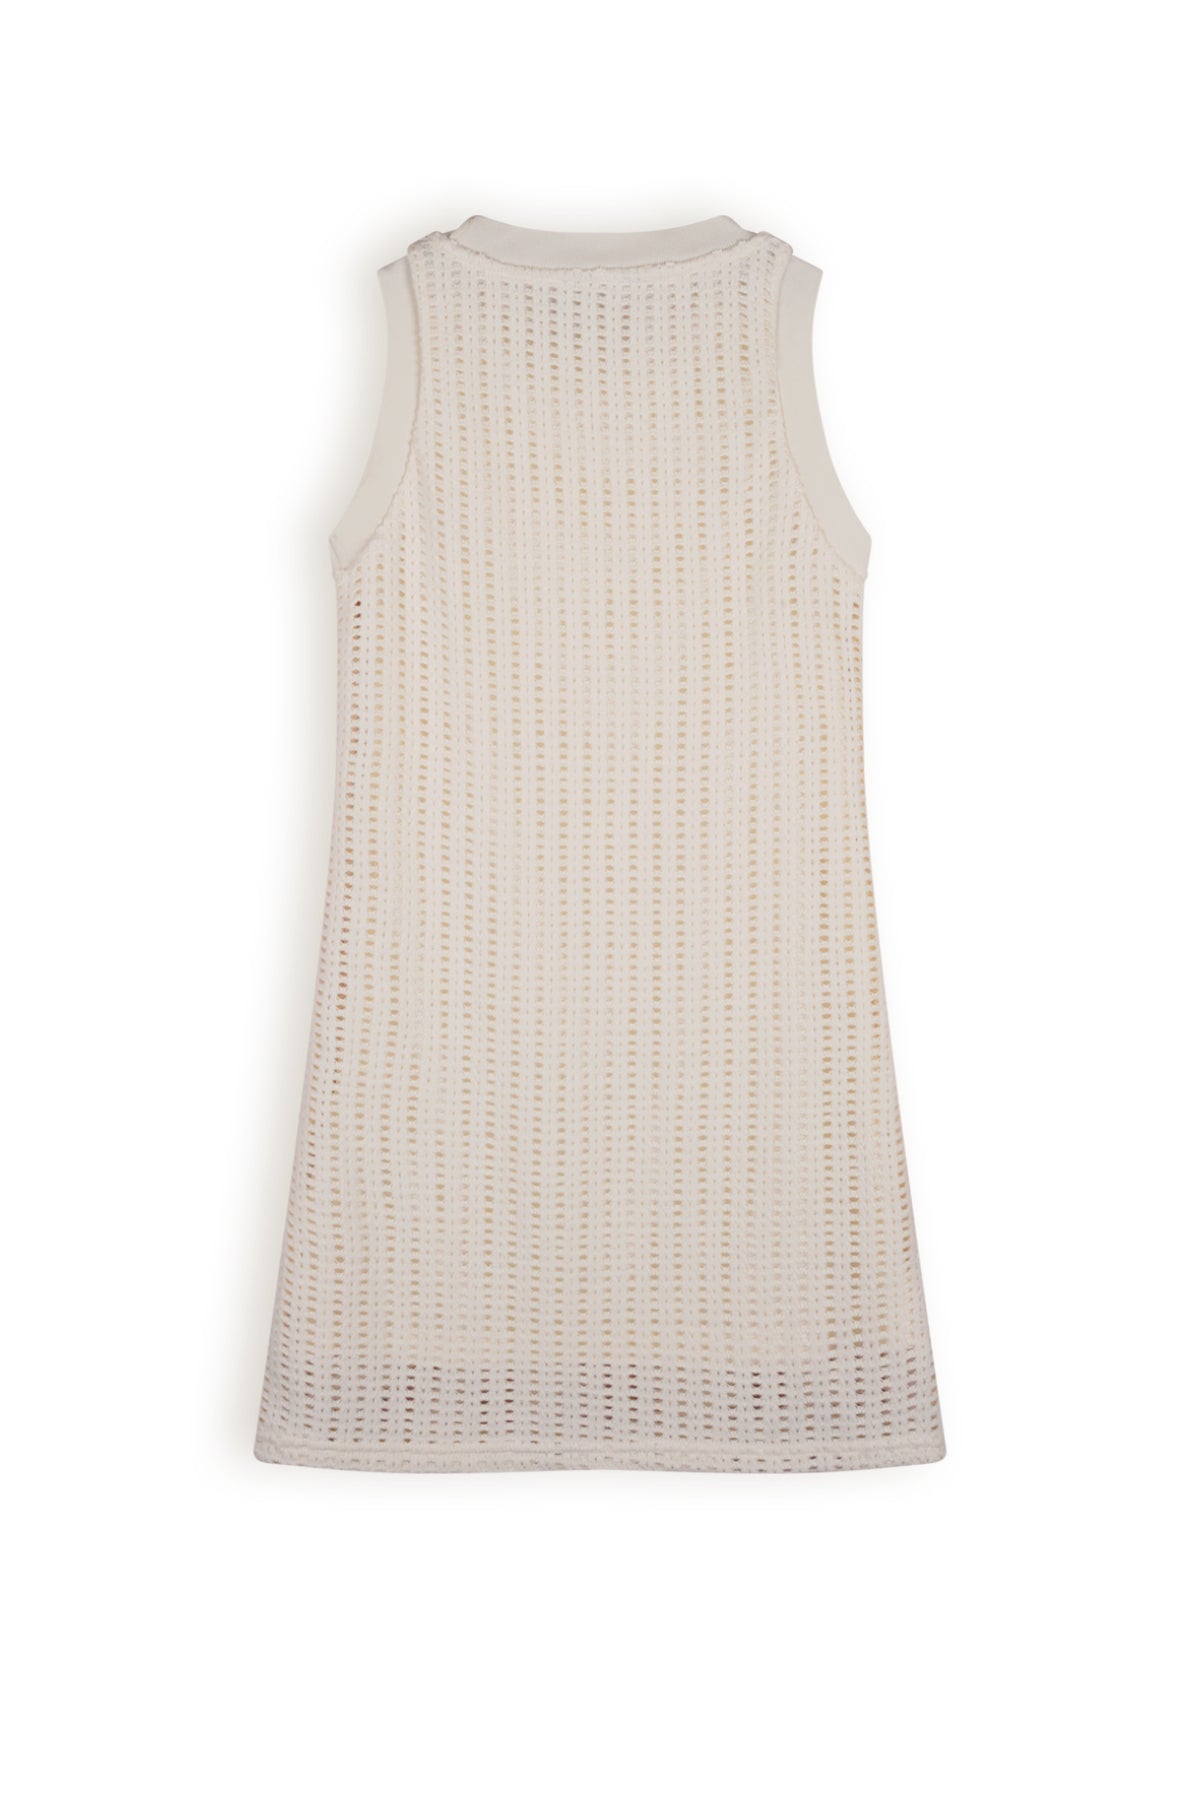 NoBell Matis Crochet Knit Singlet Dress